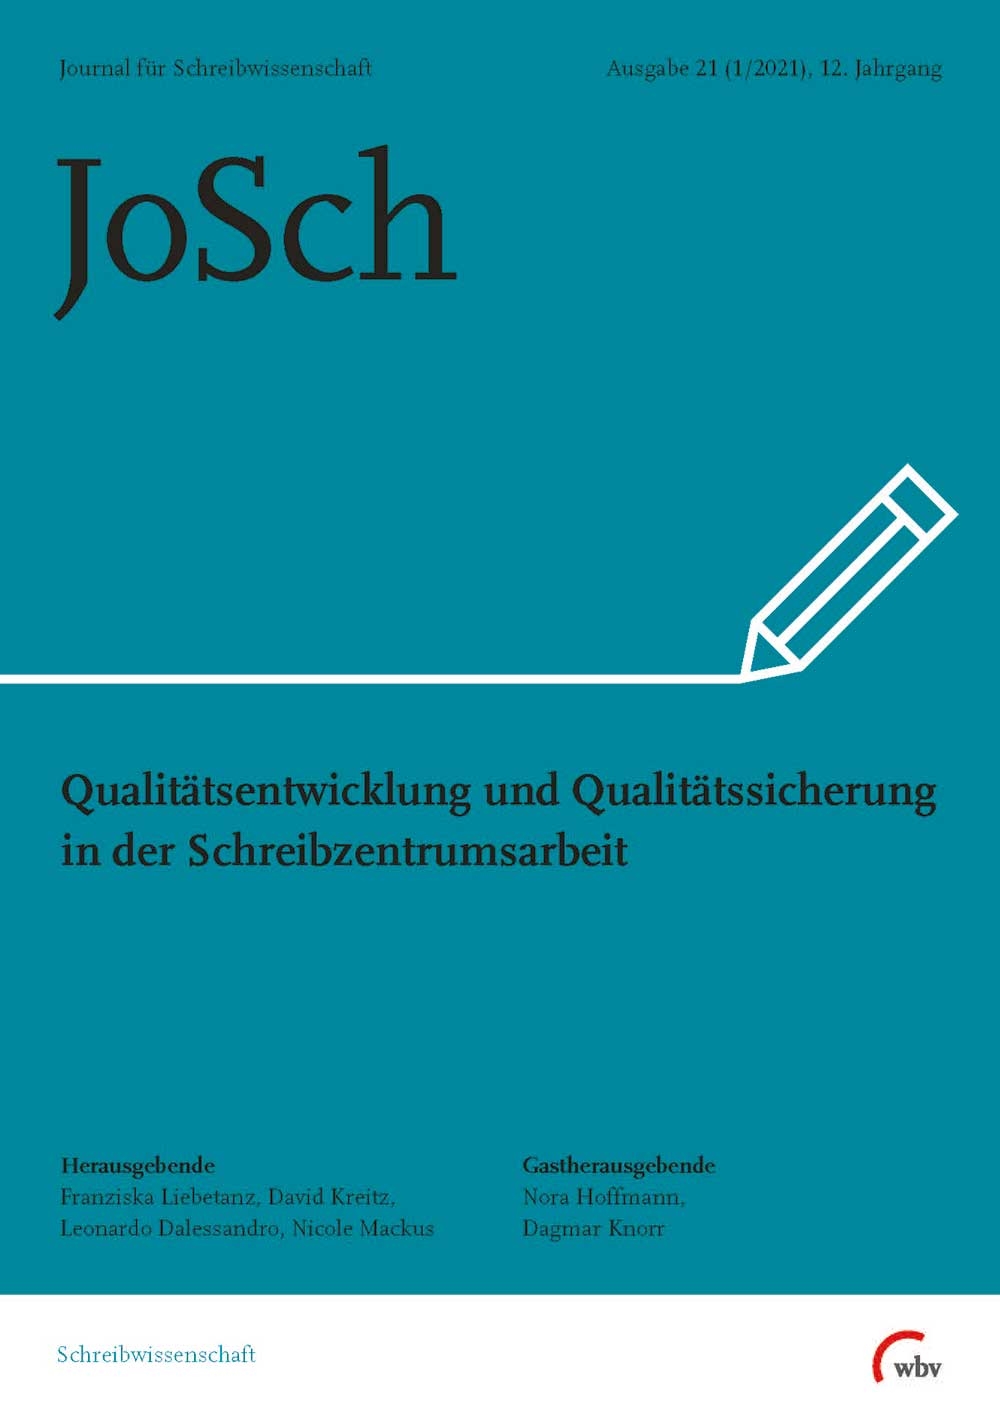 Ausgabe 21: Qualitätsentwicklung und Qualitätssicherung in der Schreibzentrumsarbeit